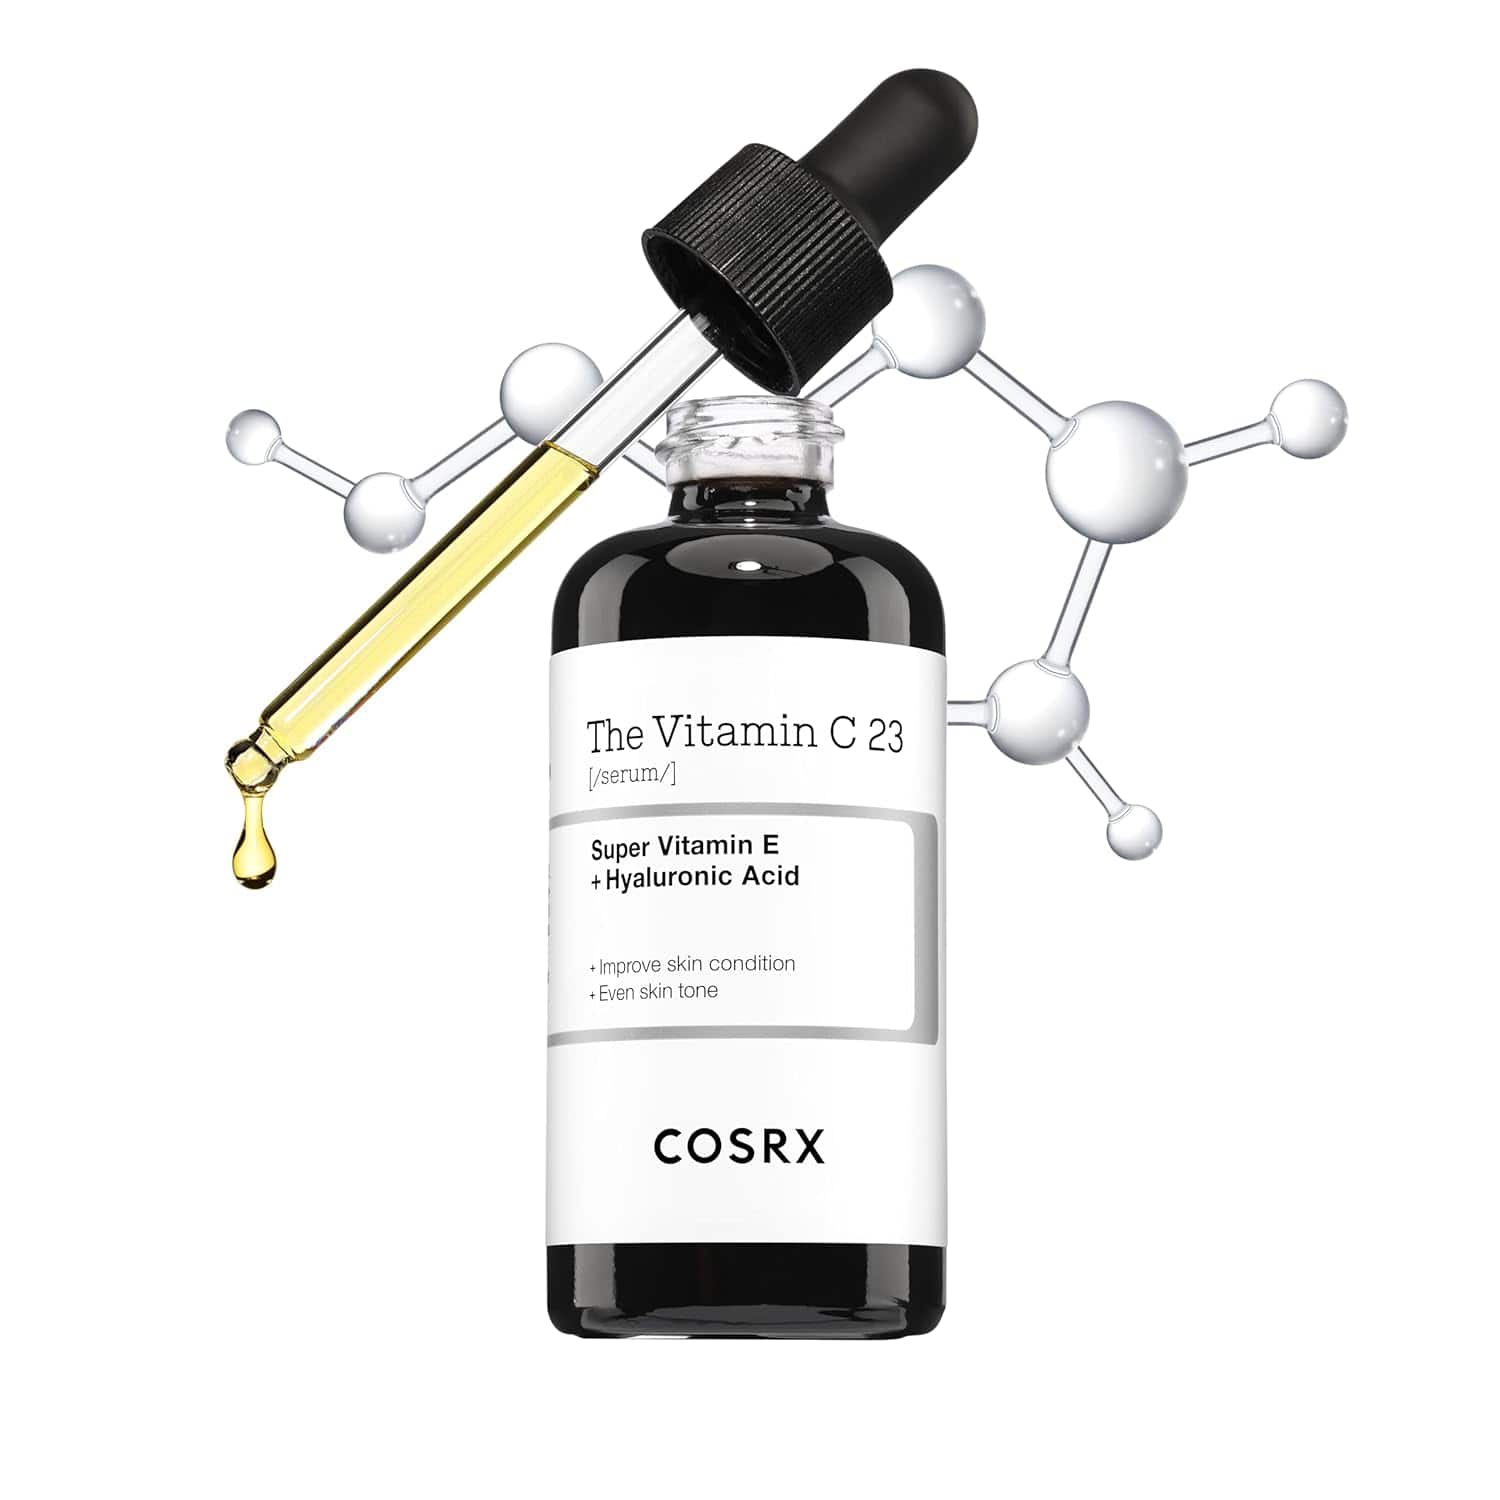 COSRX Pure Vitamin C Serum with Vitamin E